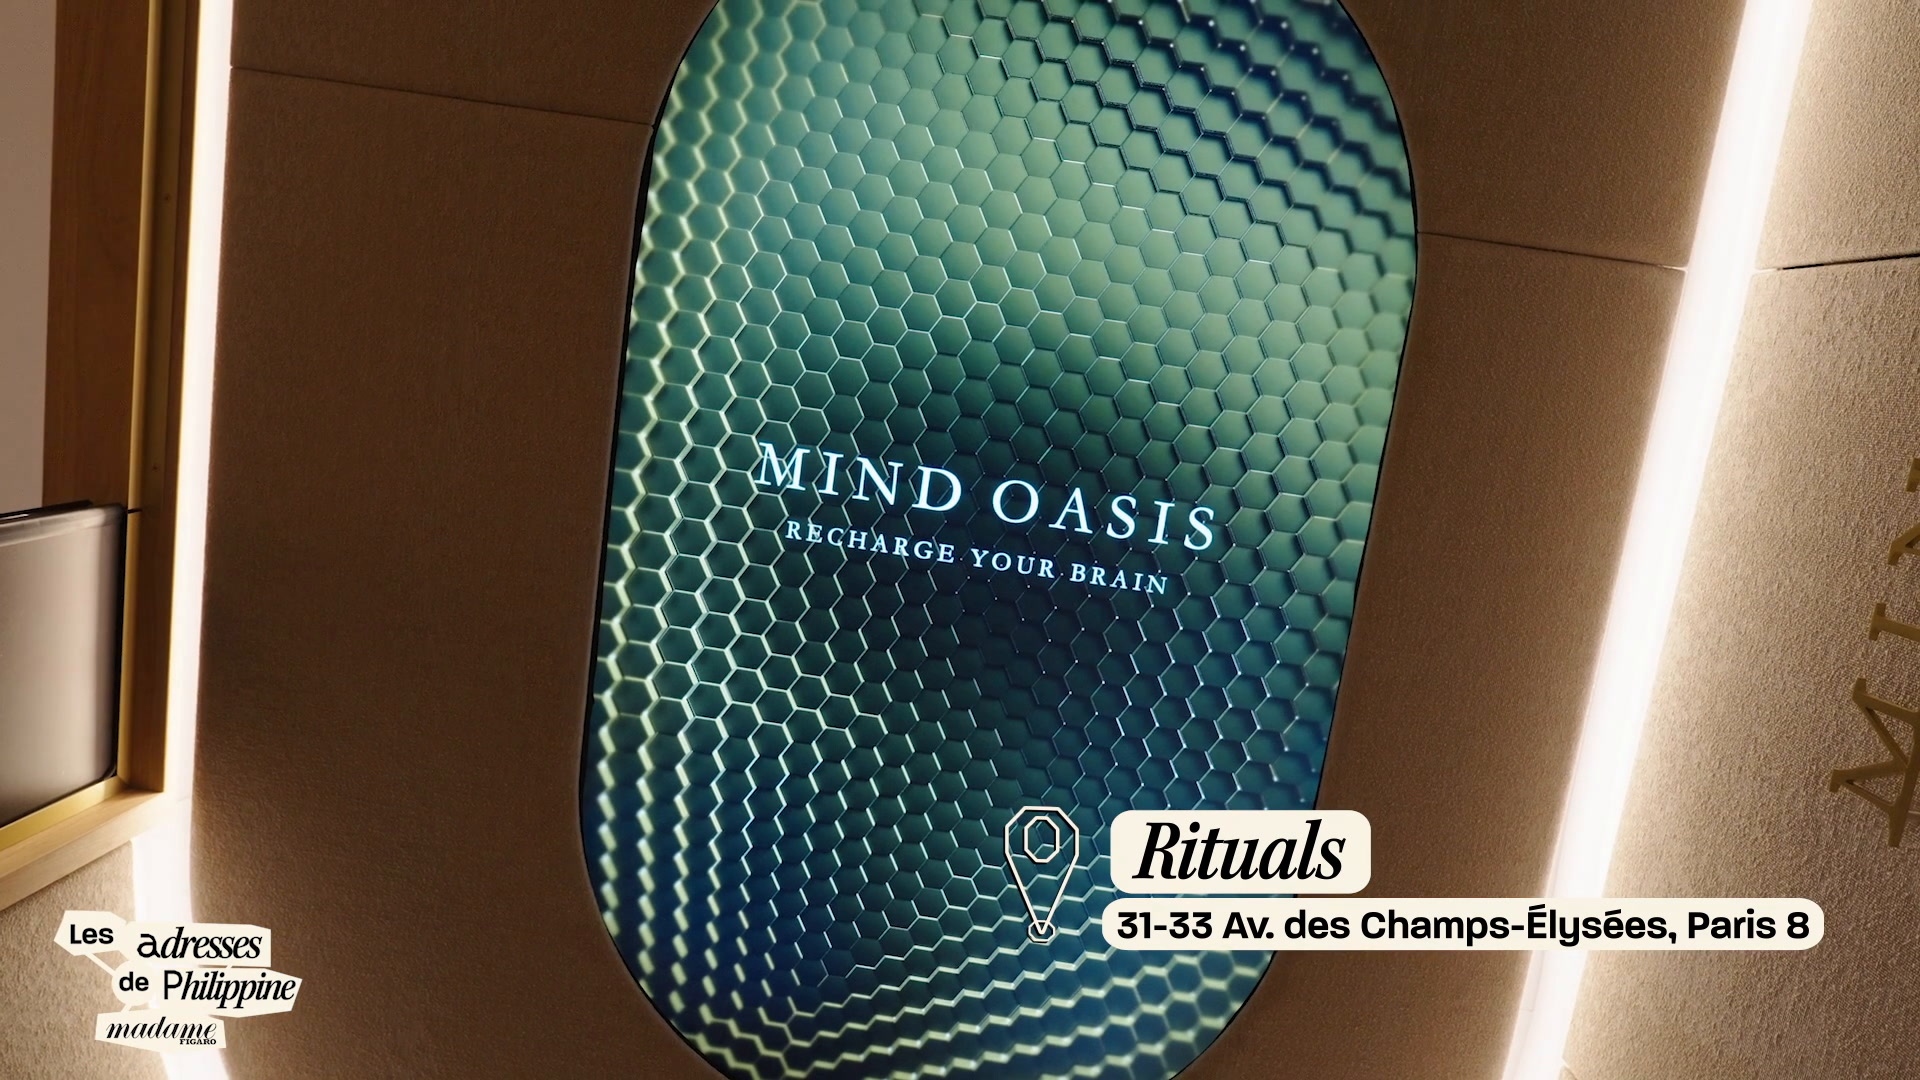 En vidéo, Les adresses de Philippine : chez Mind Oasis by Rituals, le nouvel espace dédié à la relaxation mentale